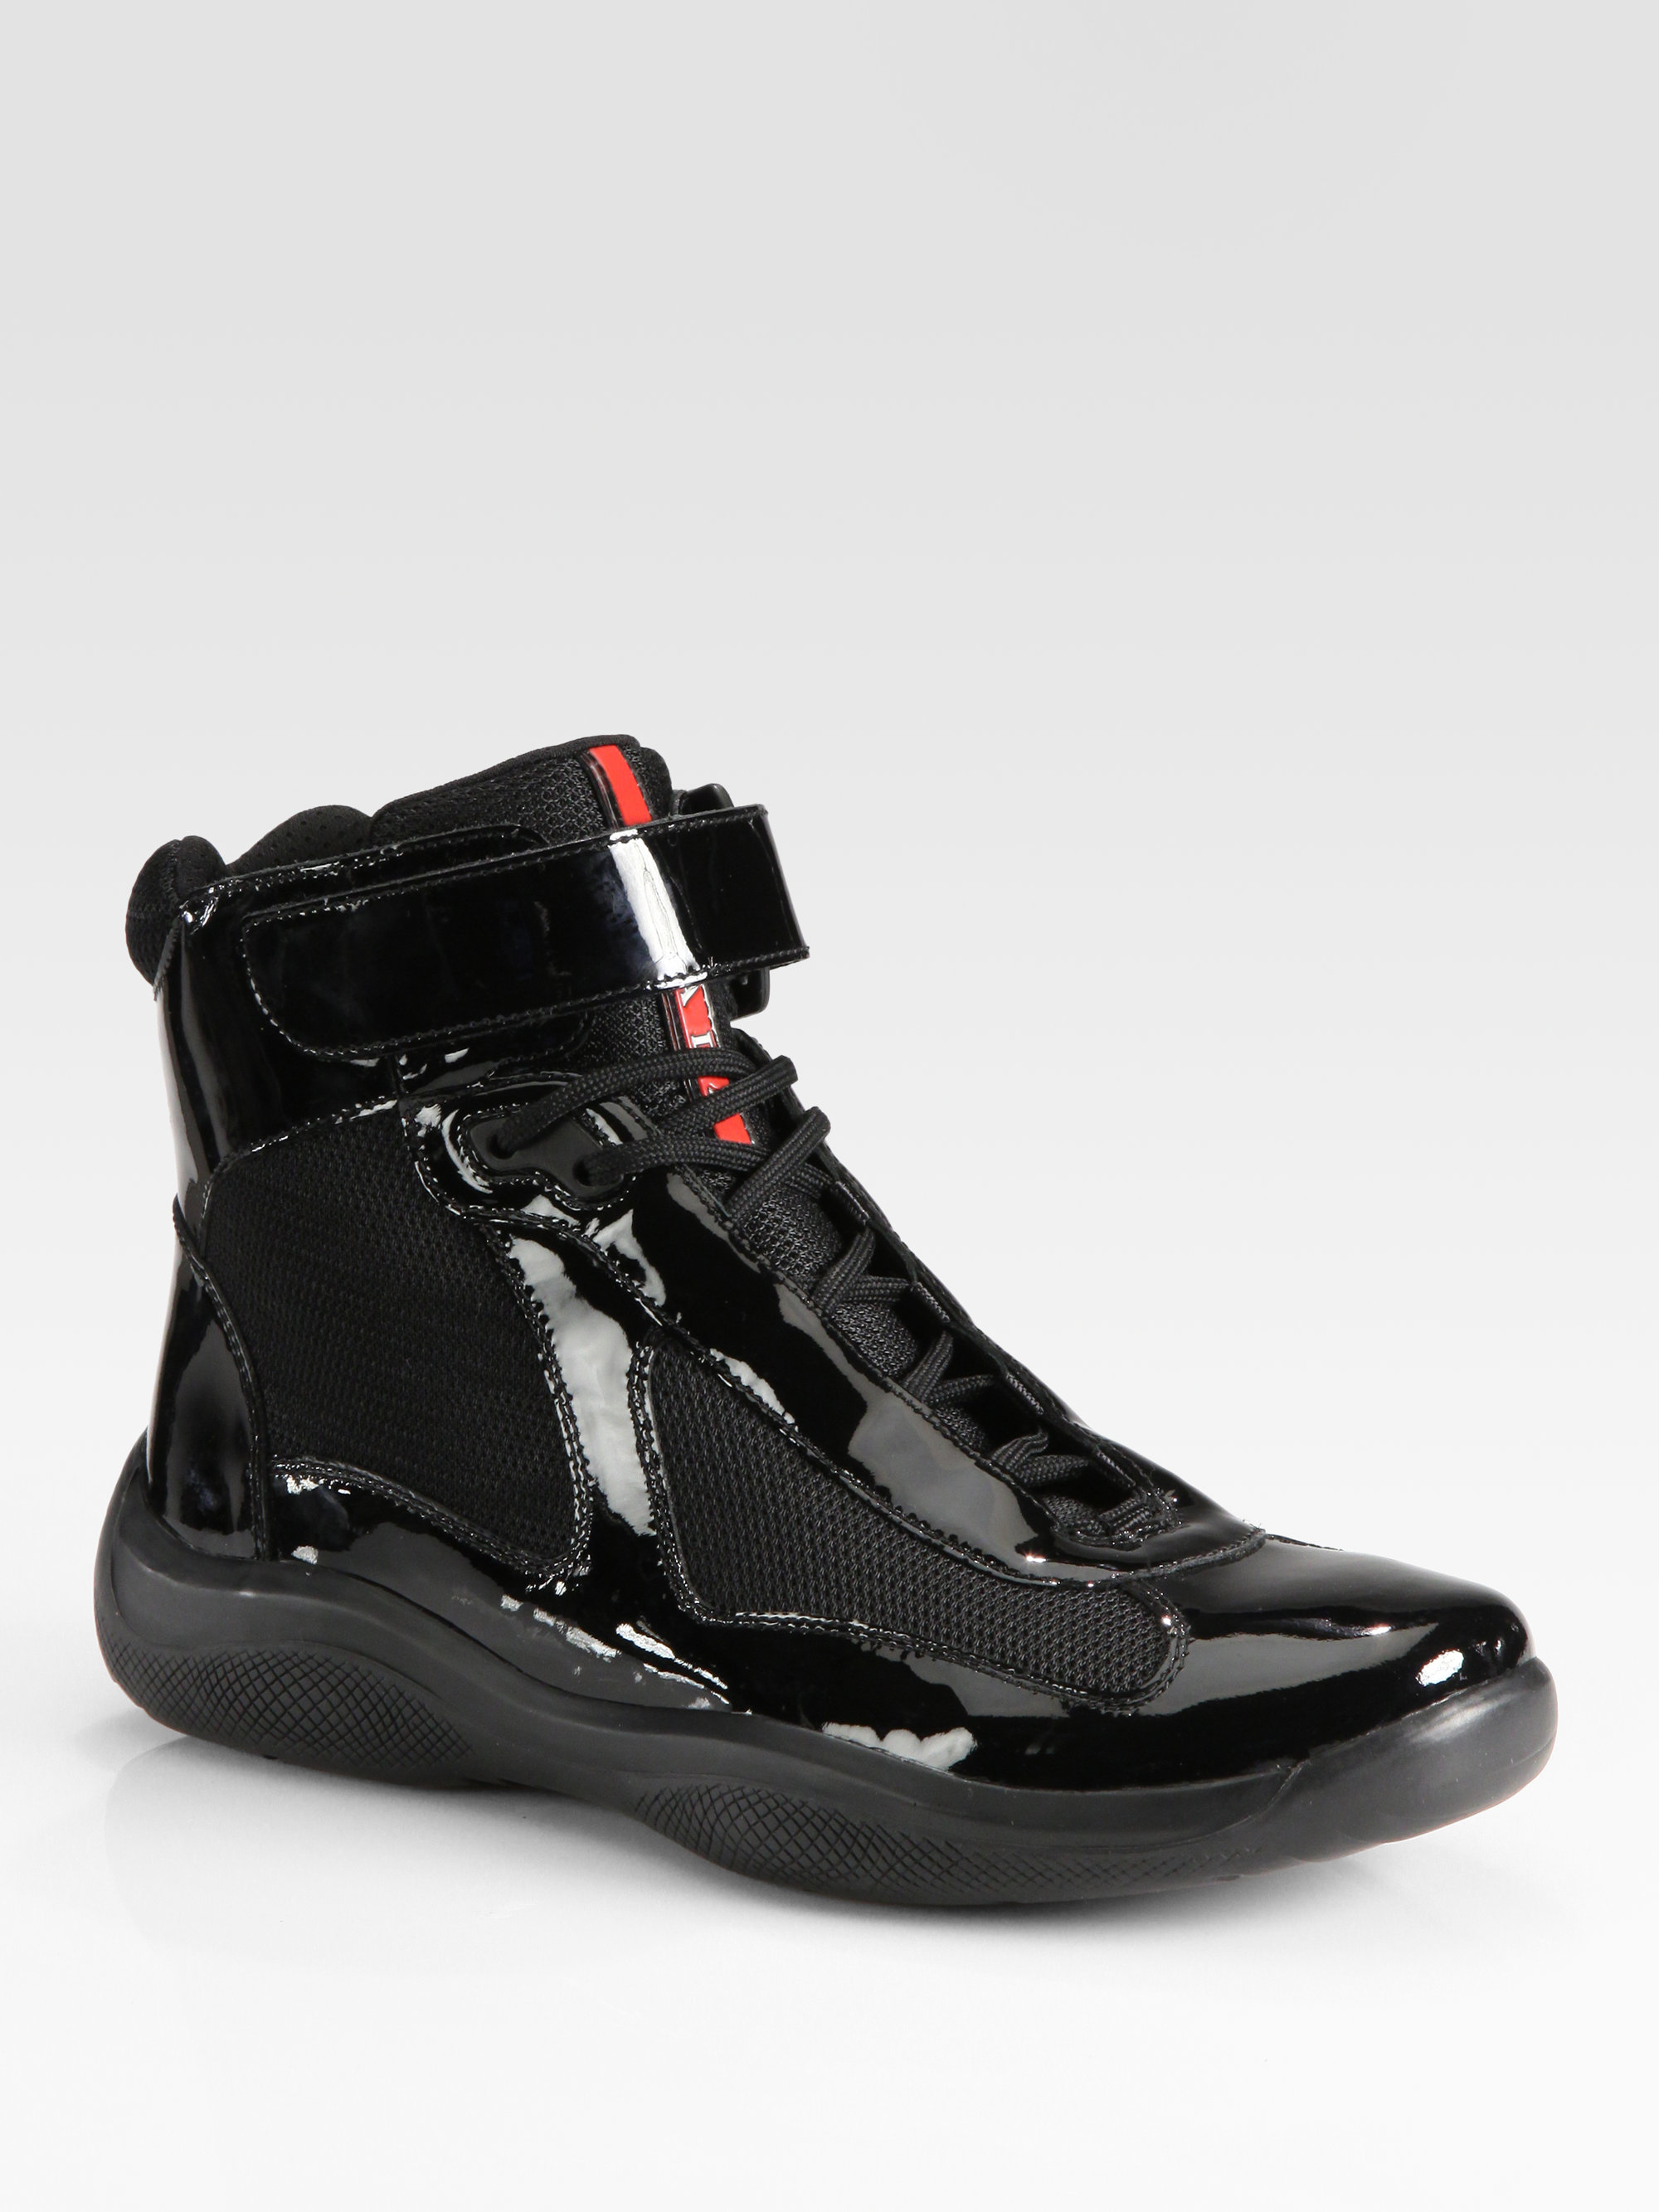 Prada Hightop Patent Sneakers in Red | Lyst